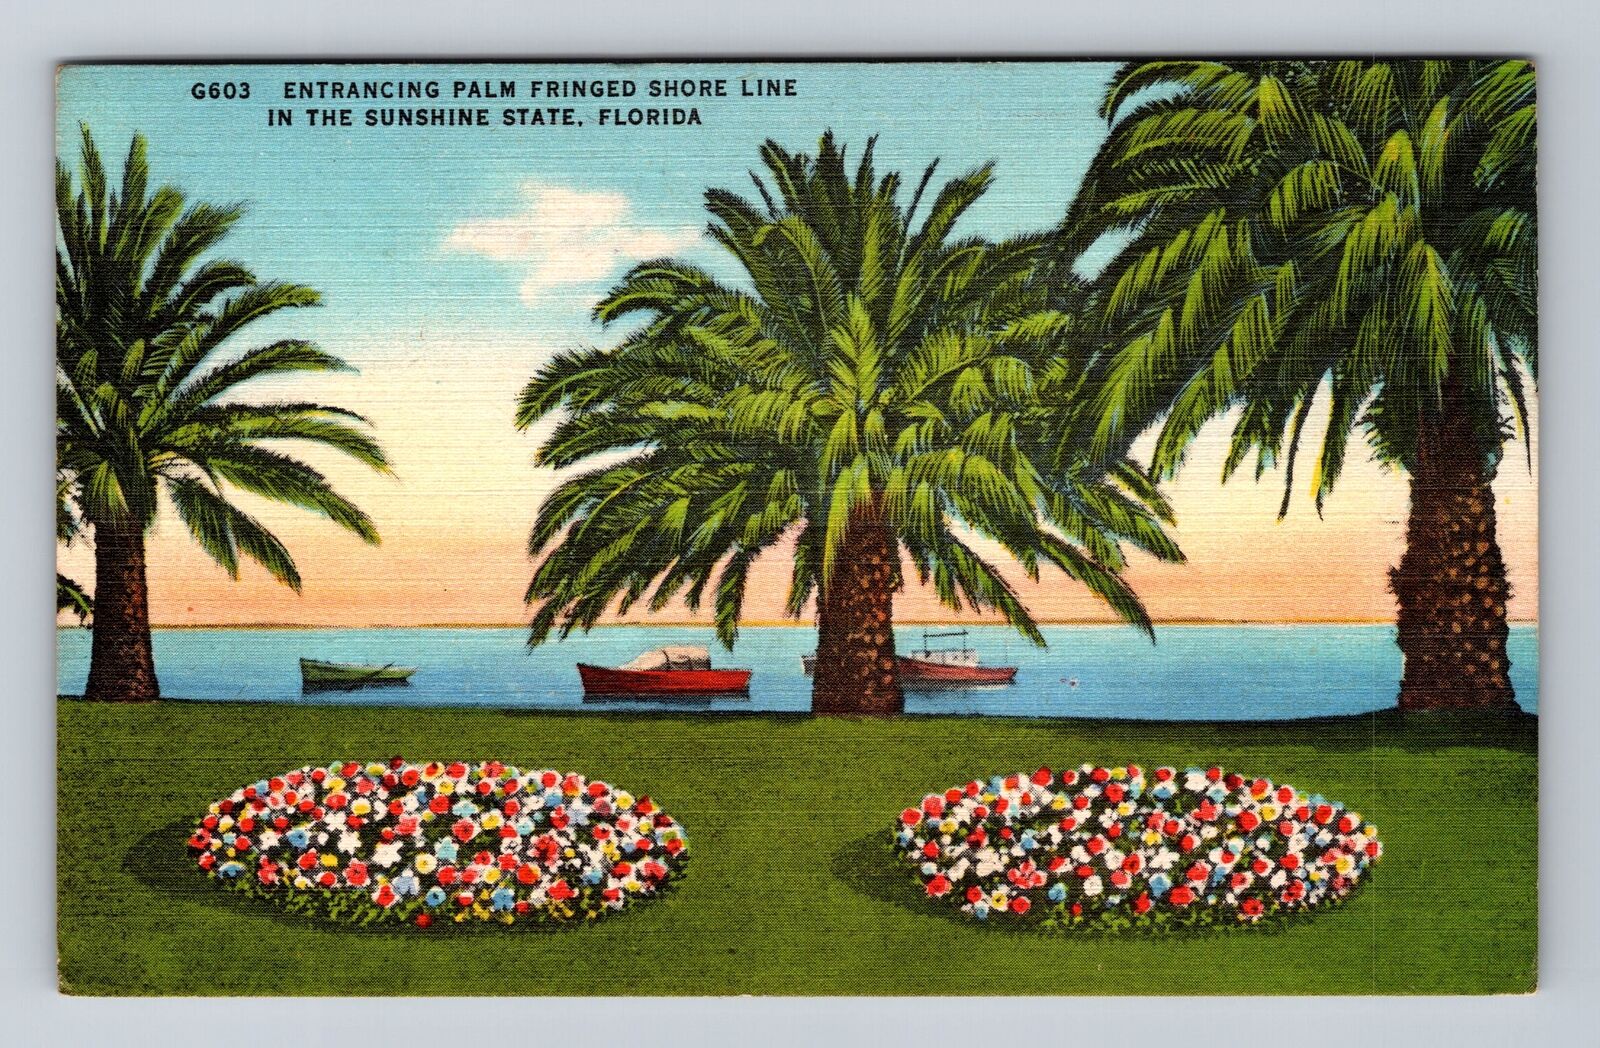 FL-Florida, Entrancing Palm Fringed Shore Line, Antique, Vintage Postcard